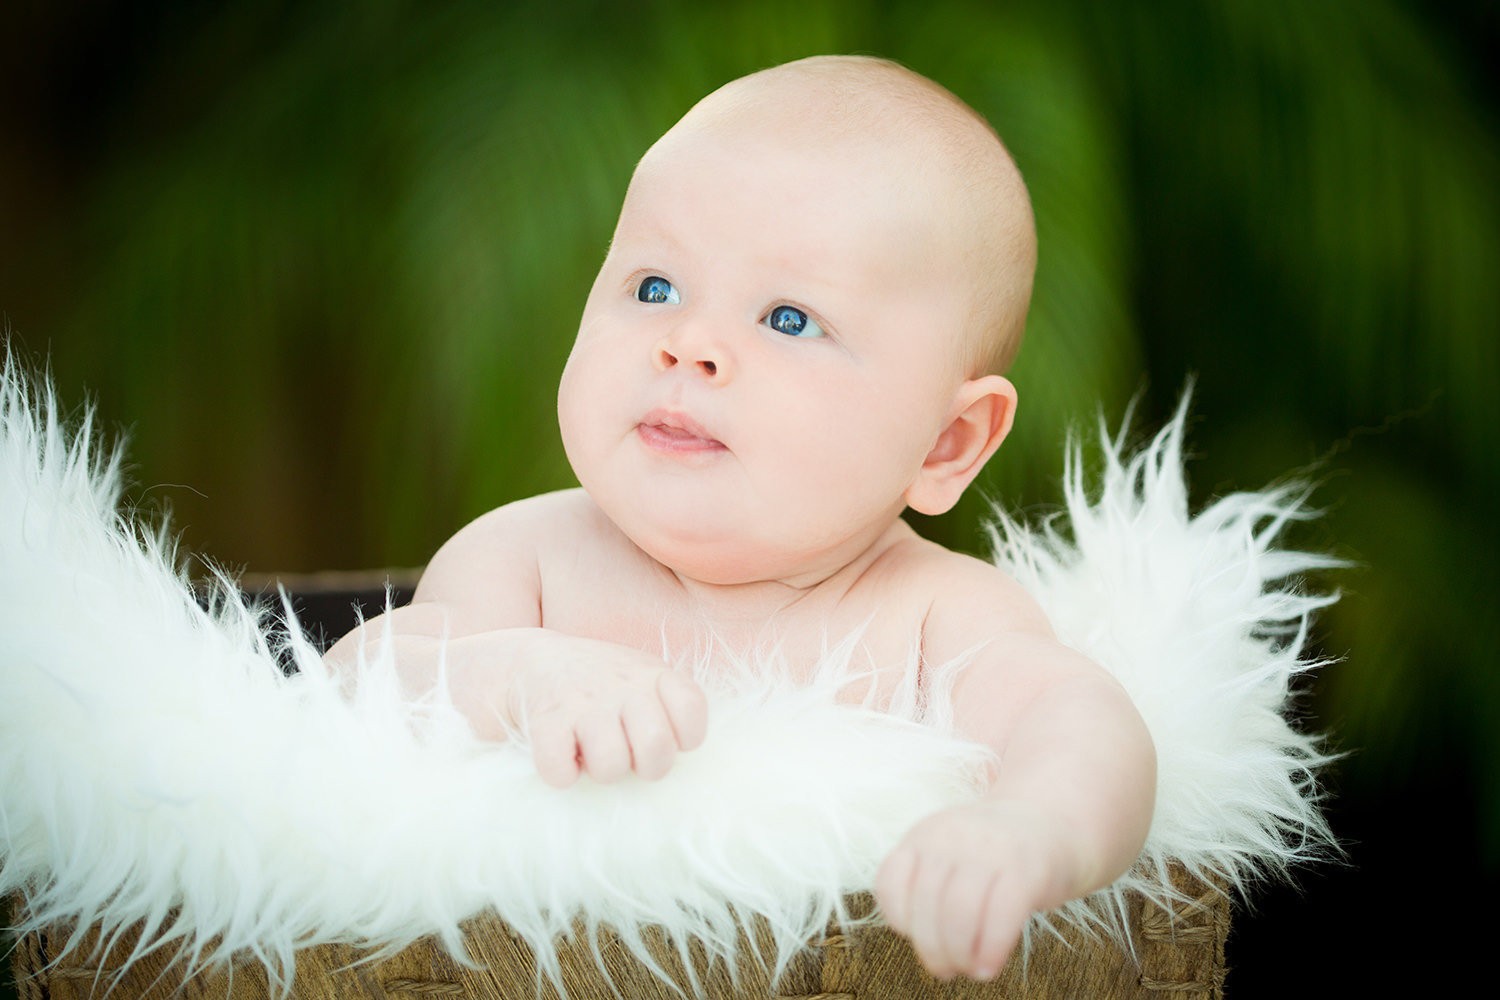 san diego newborn photography | newborn with big blue eyes in a basket